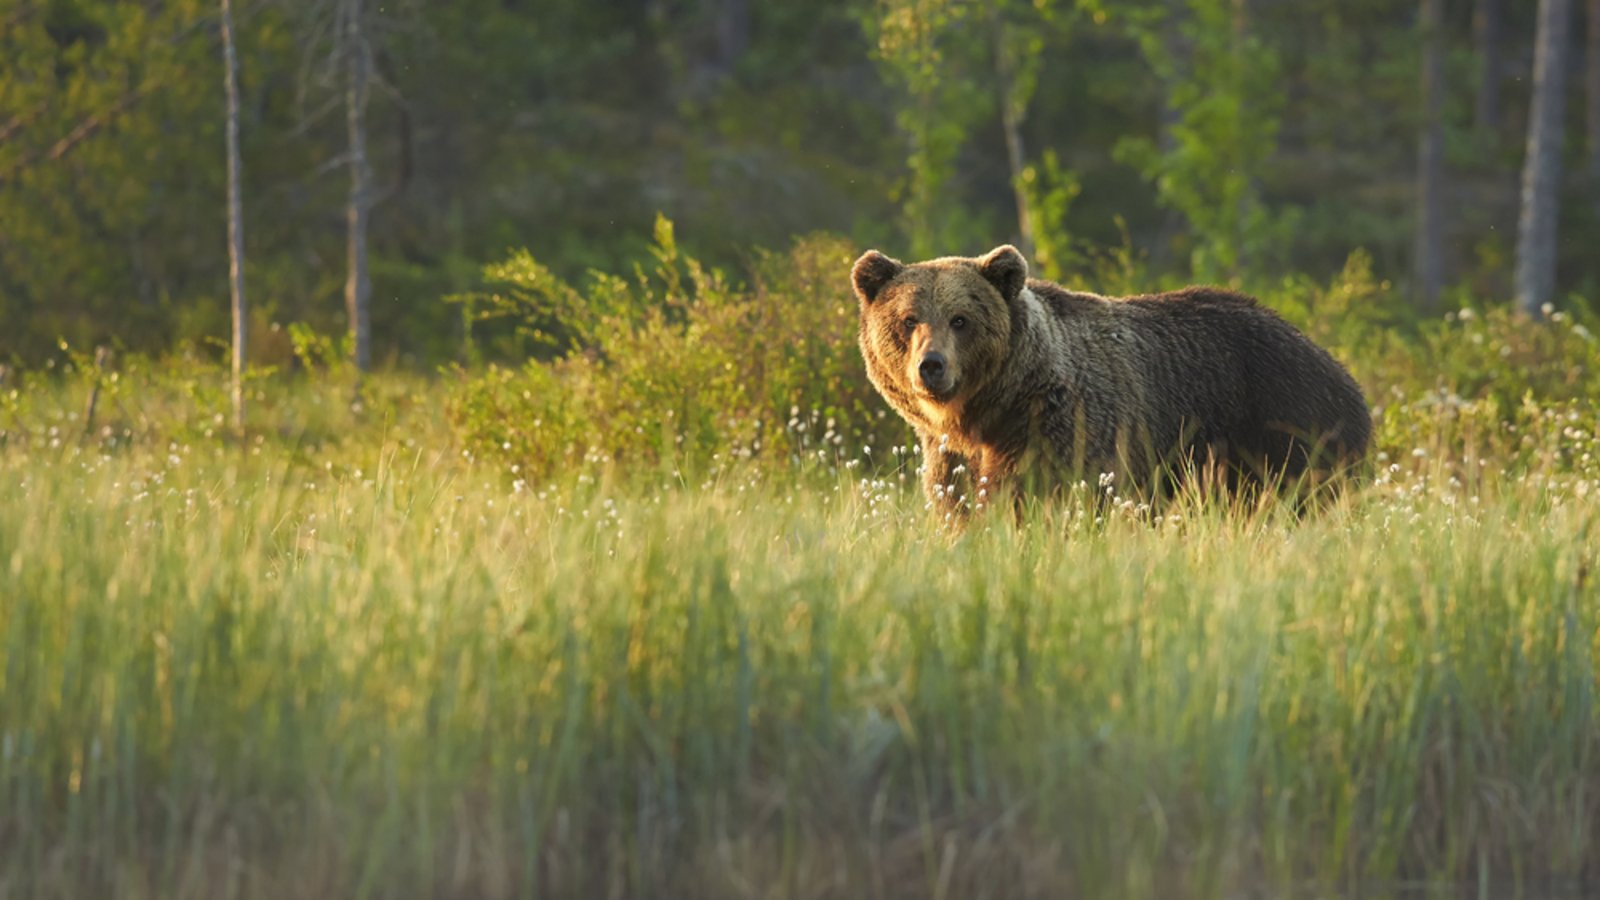 Bär oder Mann? Wem möchte man im Wald lieber begegnen?Foto: Martin Mecnarowski/Shutterstock